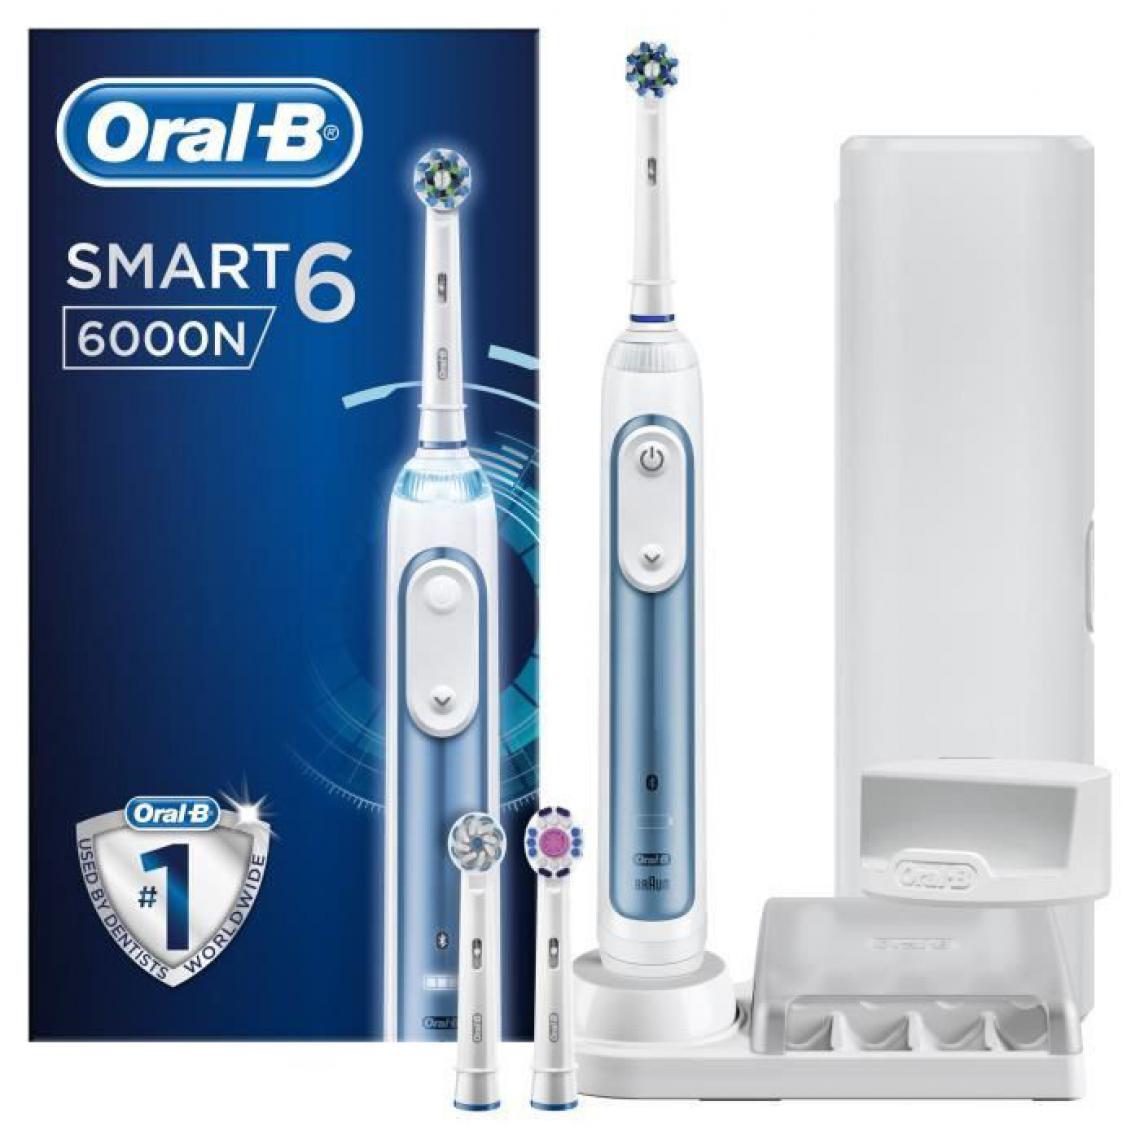 Oral-B - Oral-B Smart 6 6000N Brosse a dents electrique par BRAUN - Bleu - Brosse à dents électrique